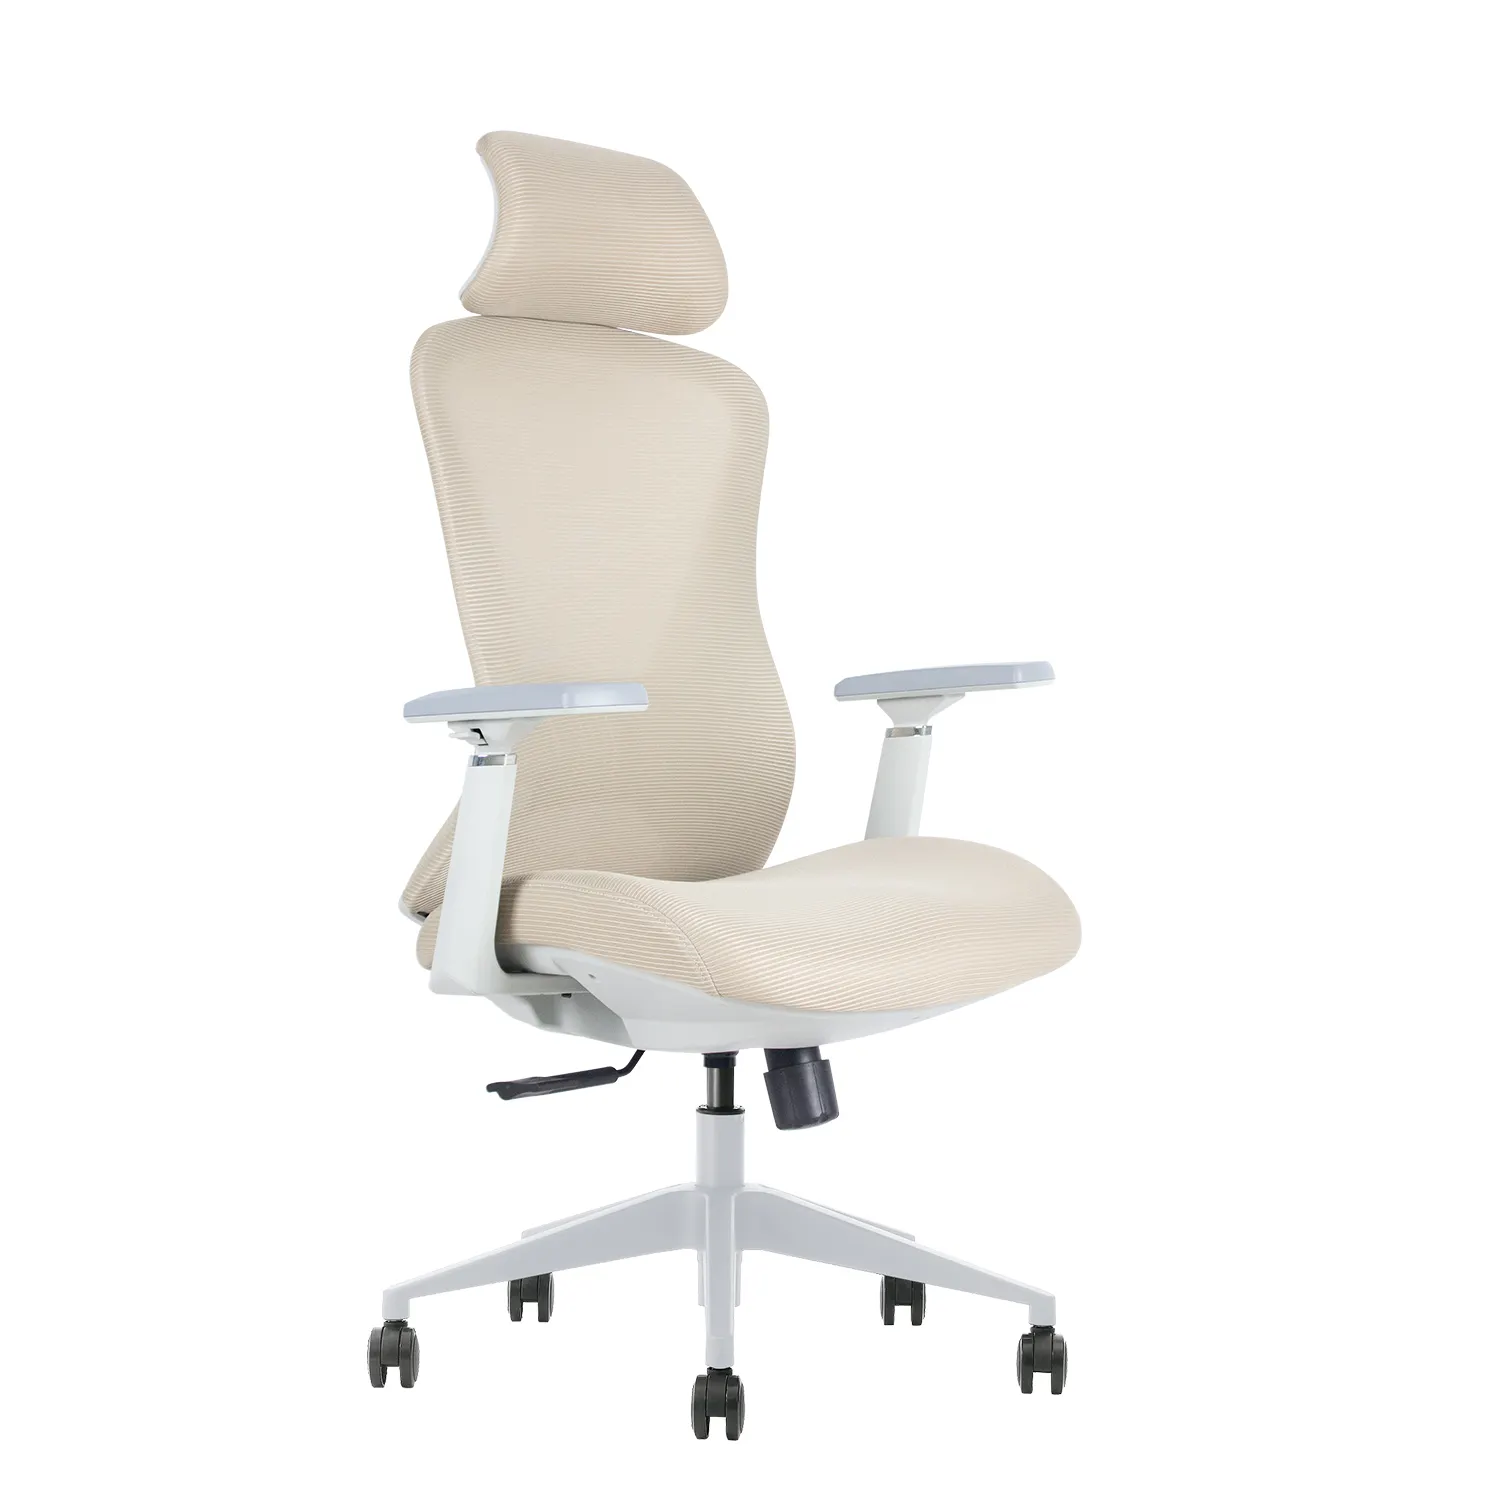 Foshan Modern kursi kantor jaring eksekutif desain ergonomis terbaik dengan kain nilon busa berkualitas BIFMA dasar logam Putar